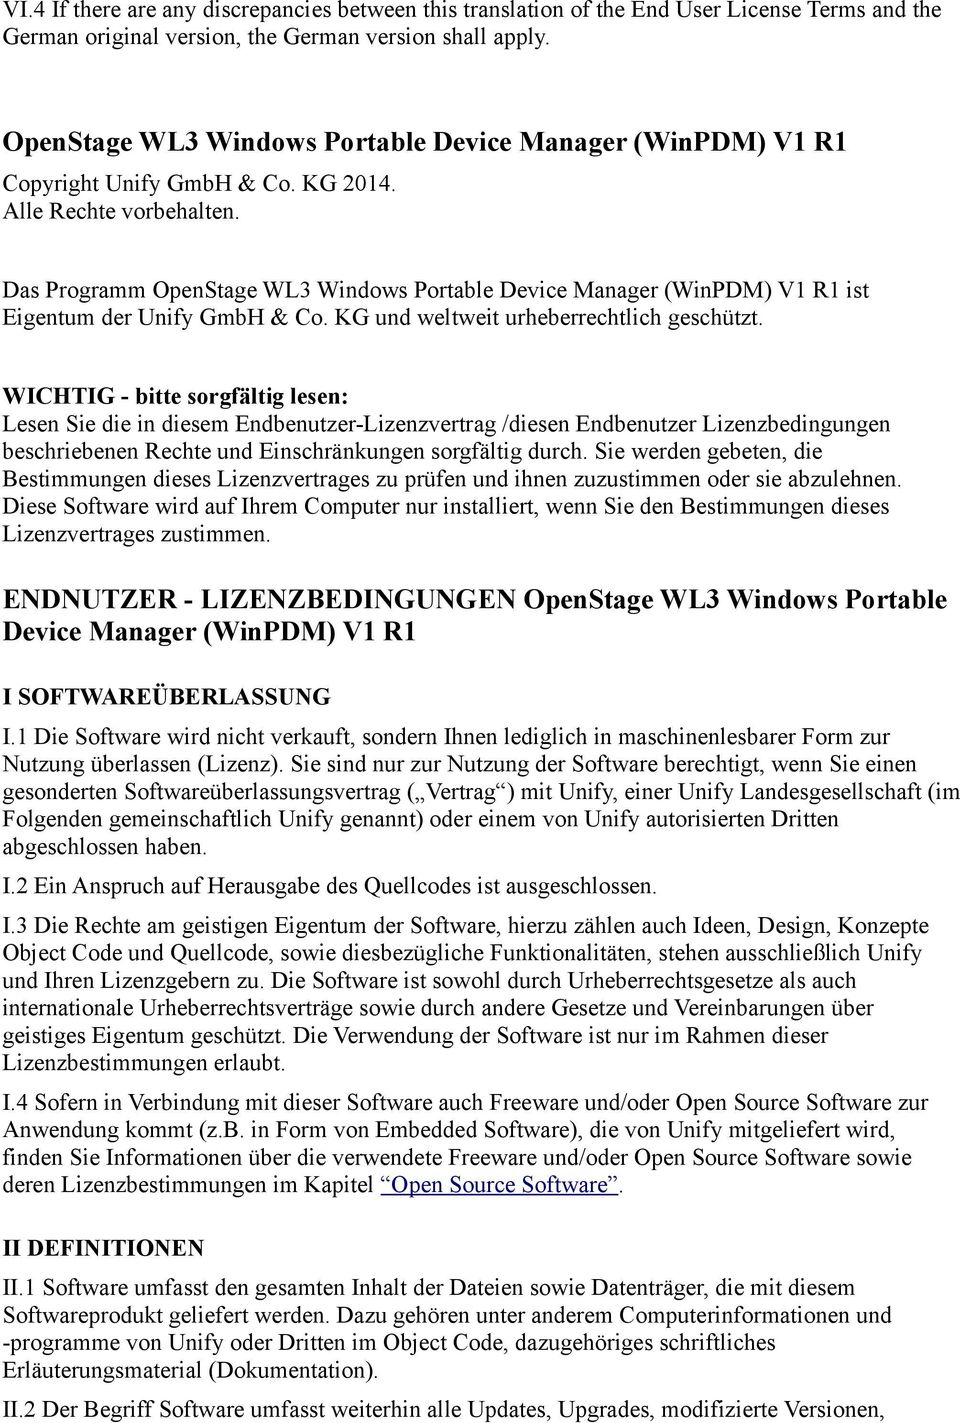 Das Programm OpenStage WL3 Windows Portable Device Manager (WinPDM) V1 R1 ist Eigentum der Unify GmbH & Co. KG und weltweit urheberrechtlich geschützt.